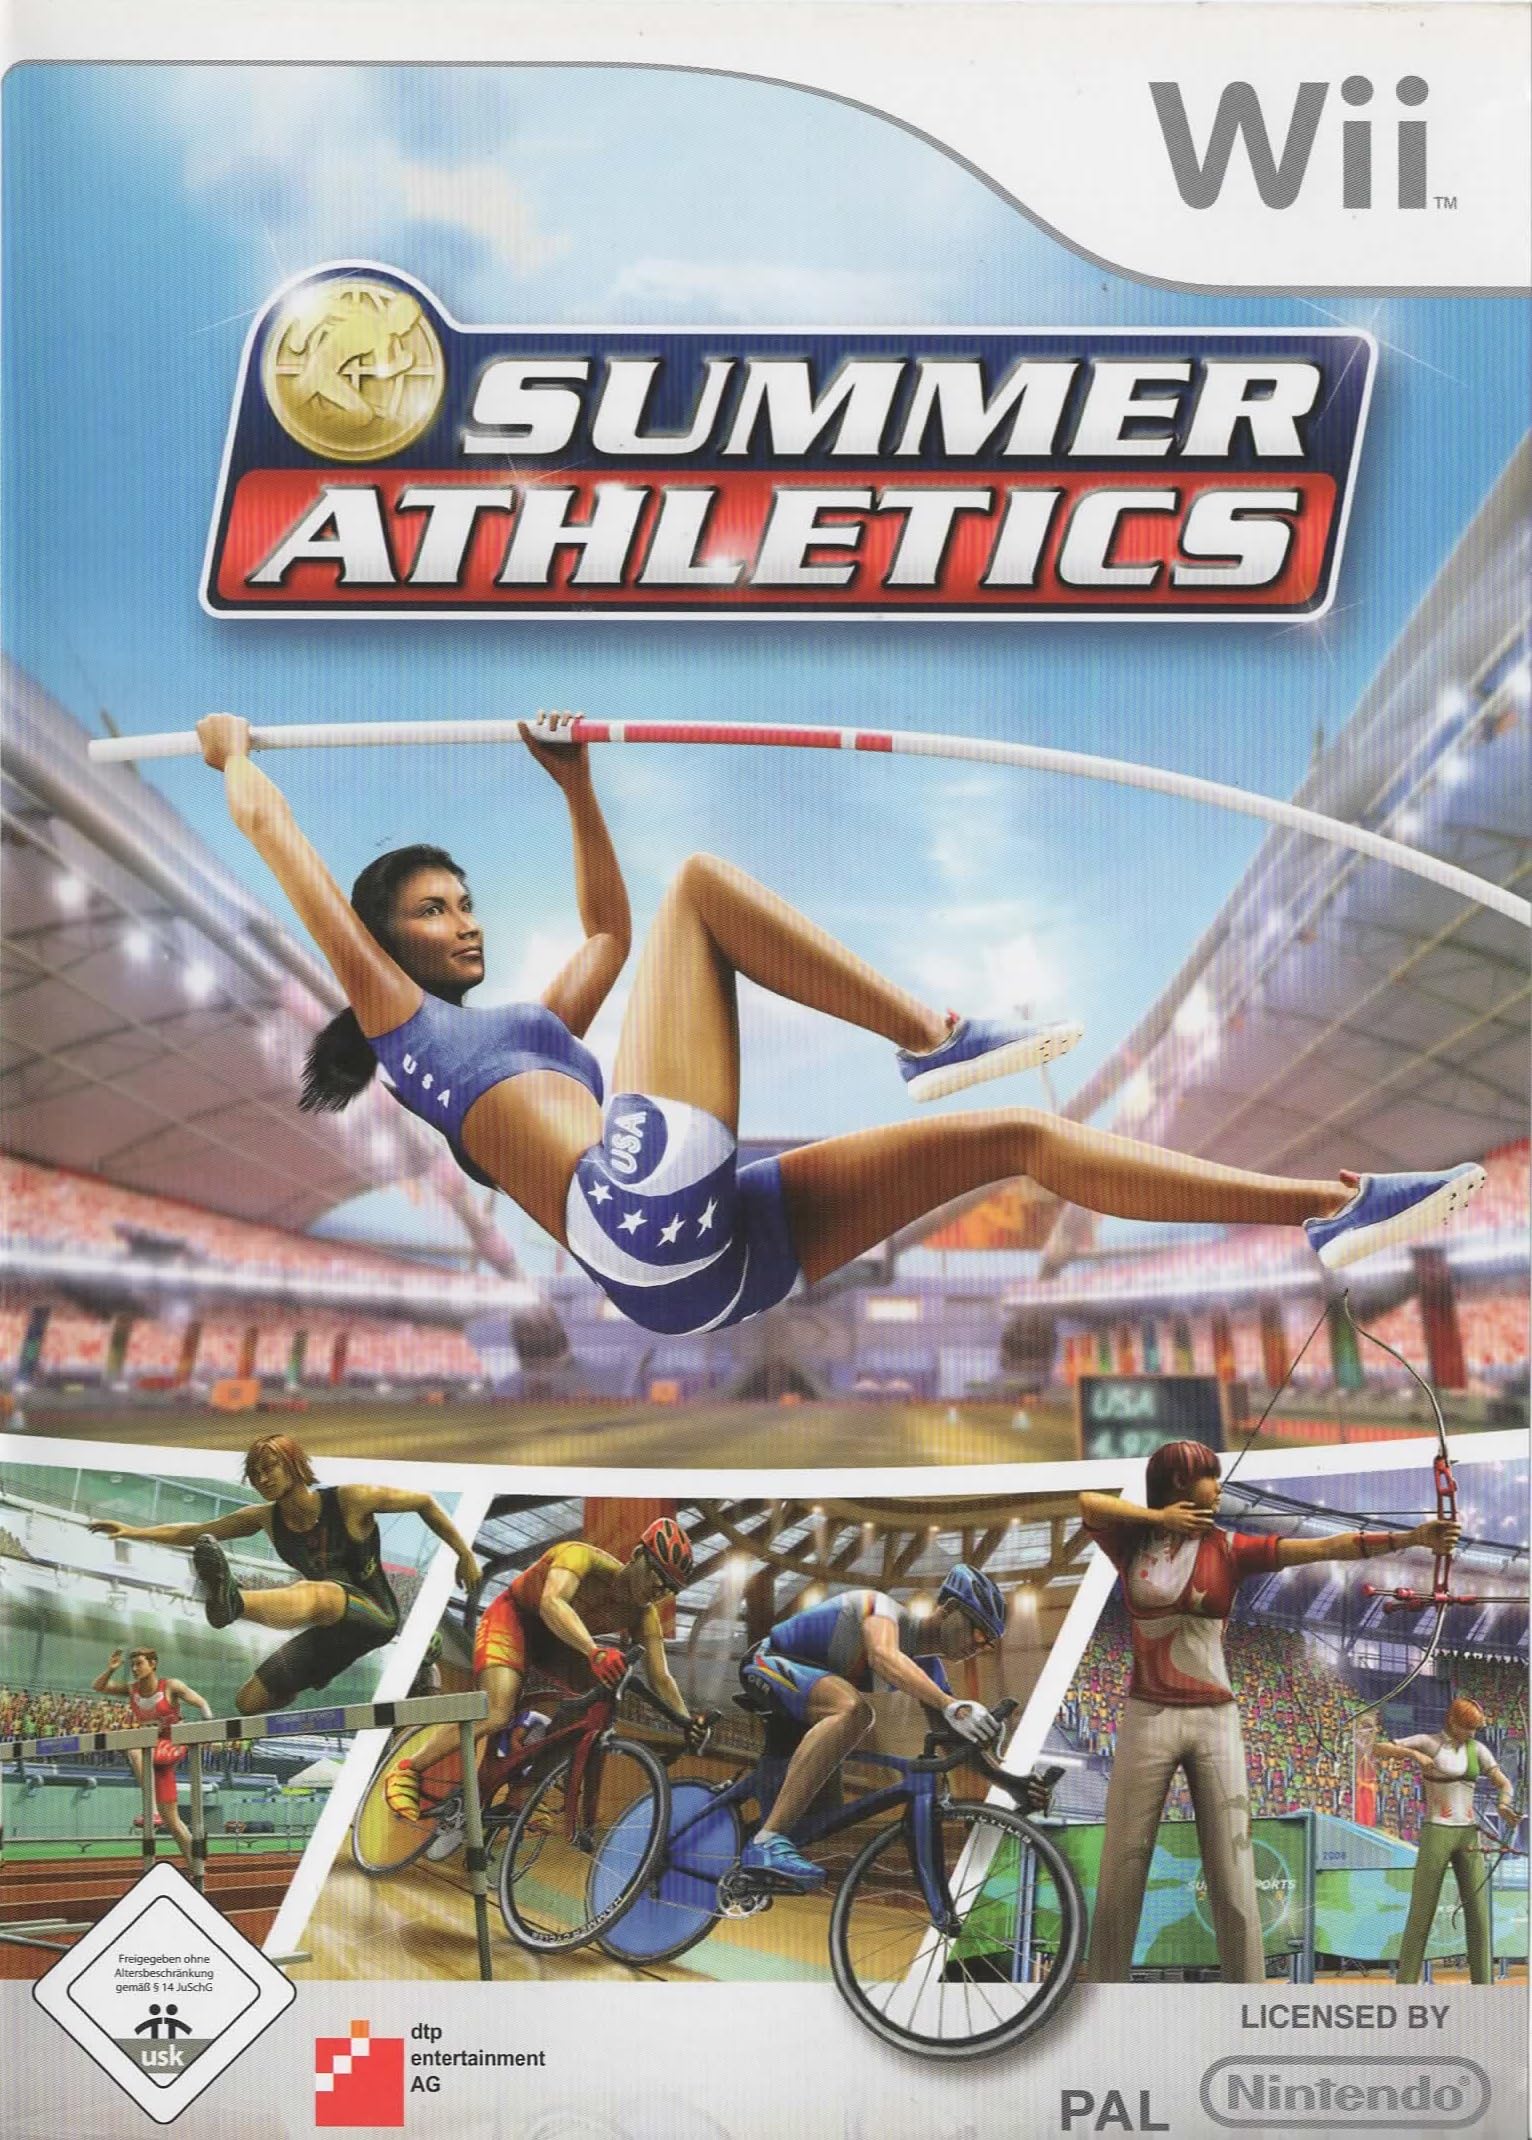 Summer Athletics